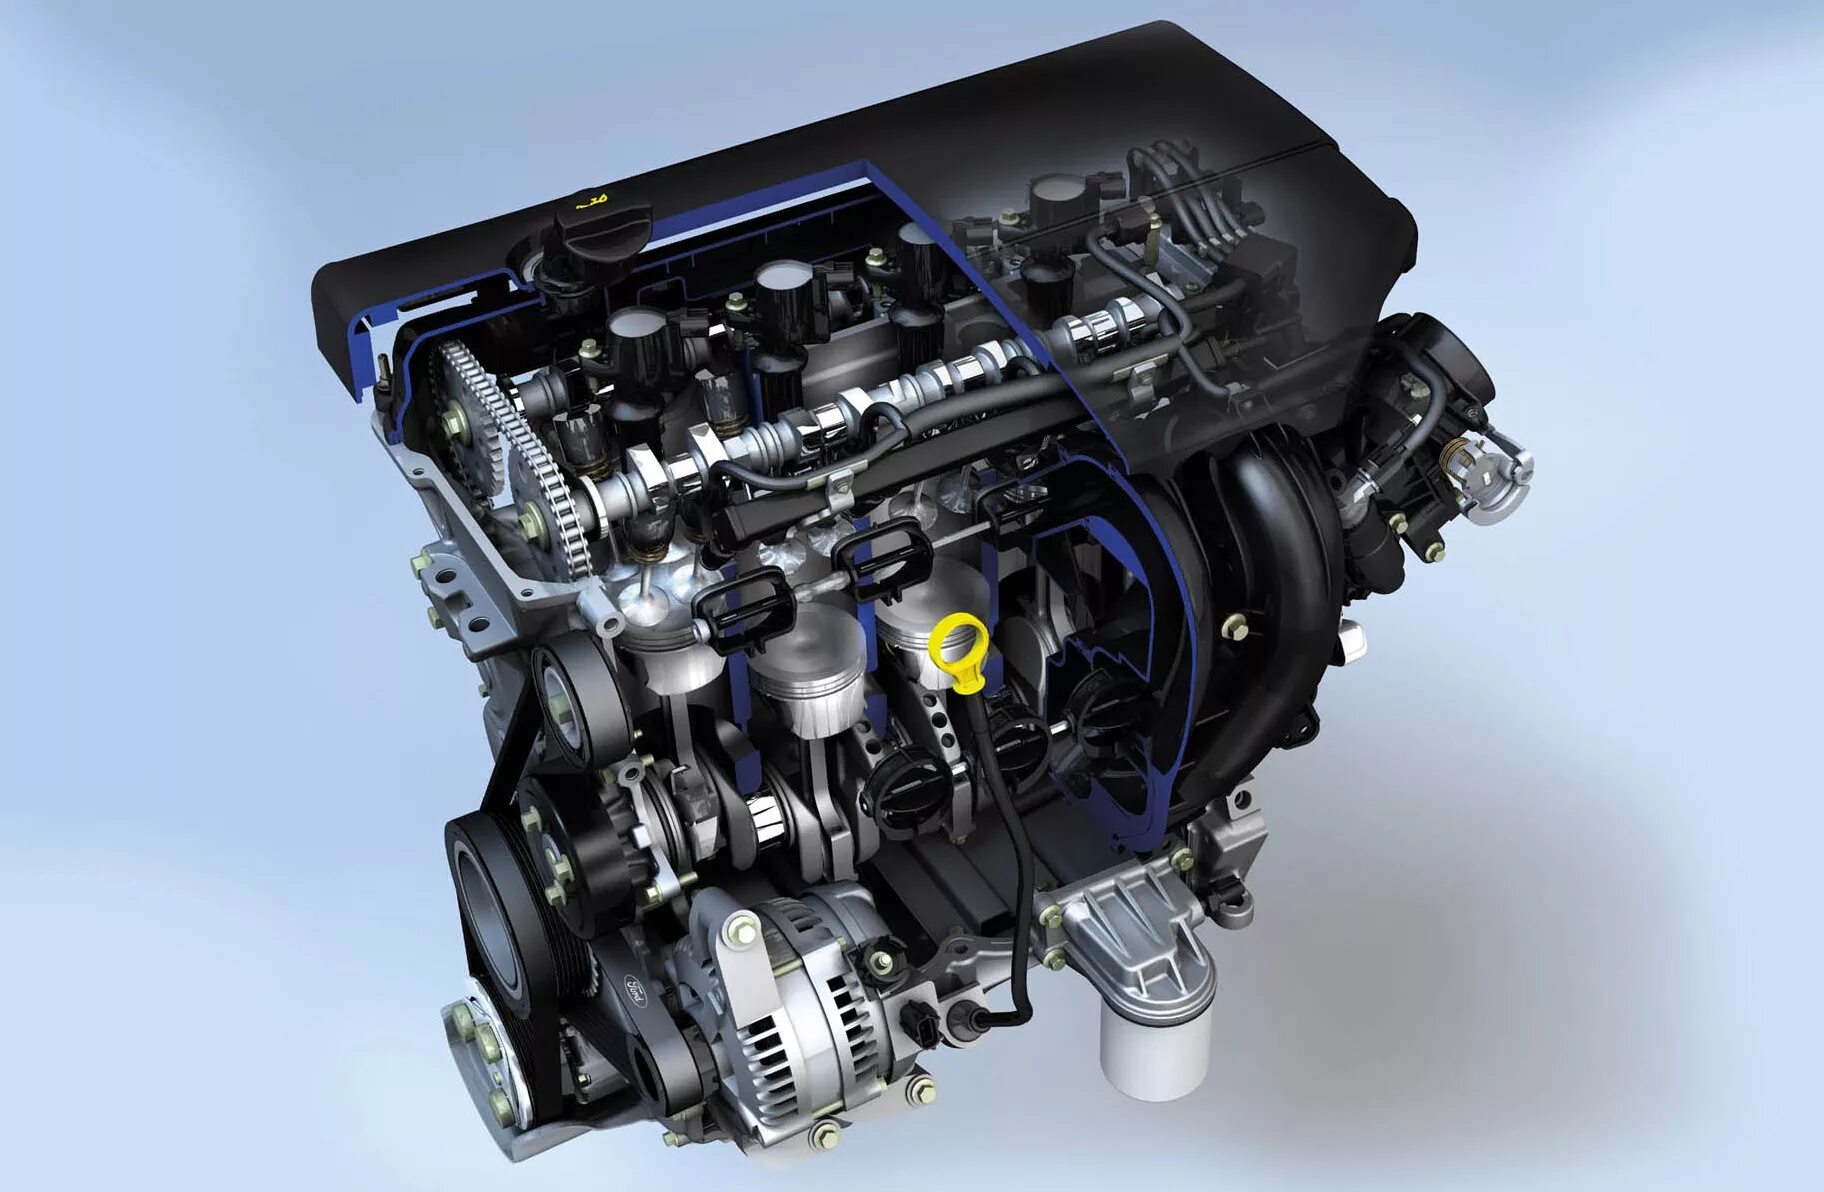 Мотор Форд фокус 1.8. Двигатель Форд фокус 2 1.8. Двигатель Форд фокус 2 1.8 125л.с. Мотор Форд фокус 2 2.0.